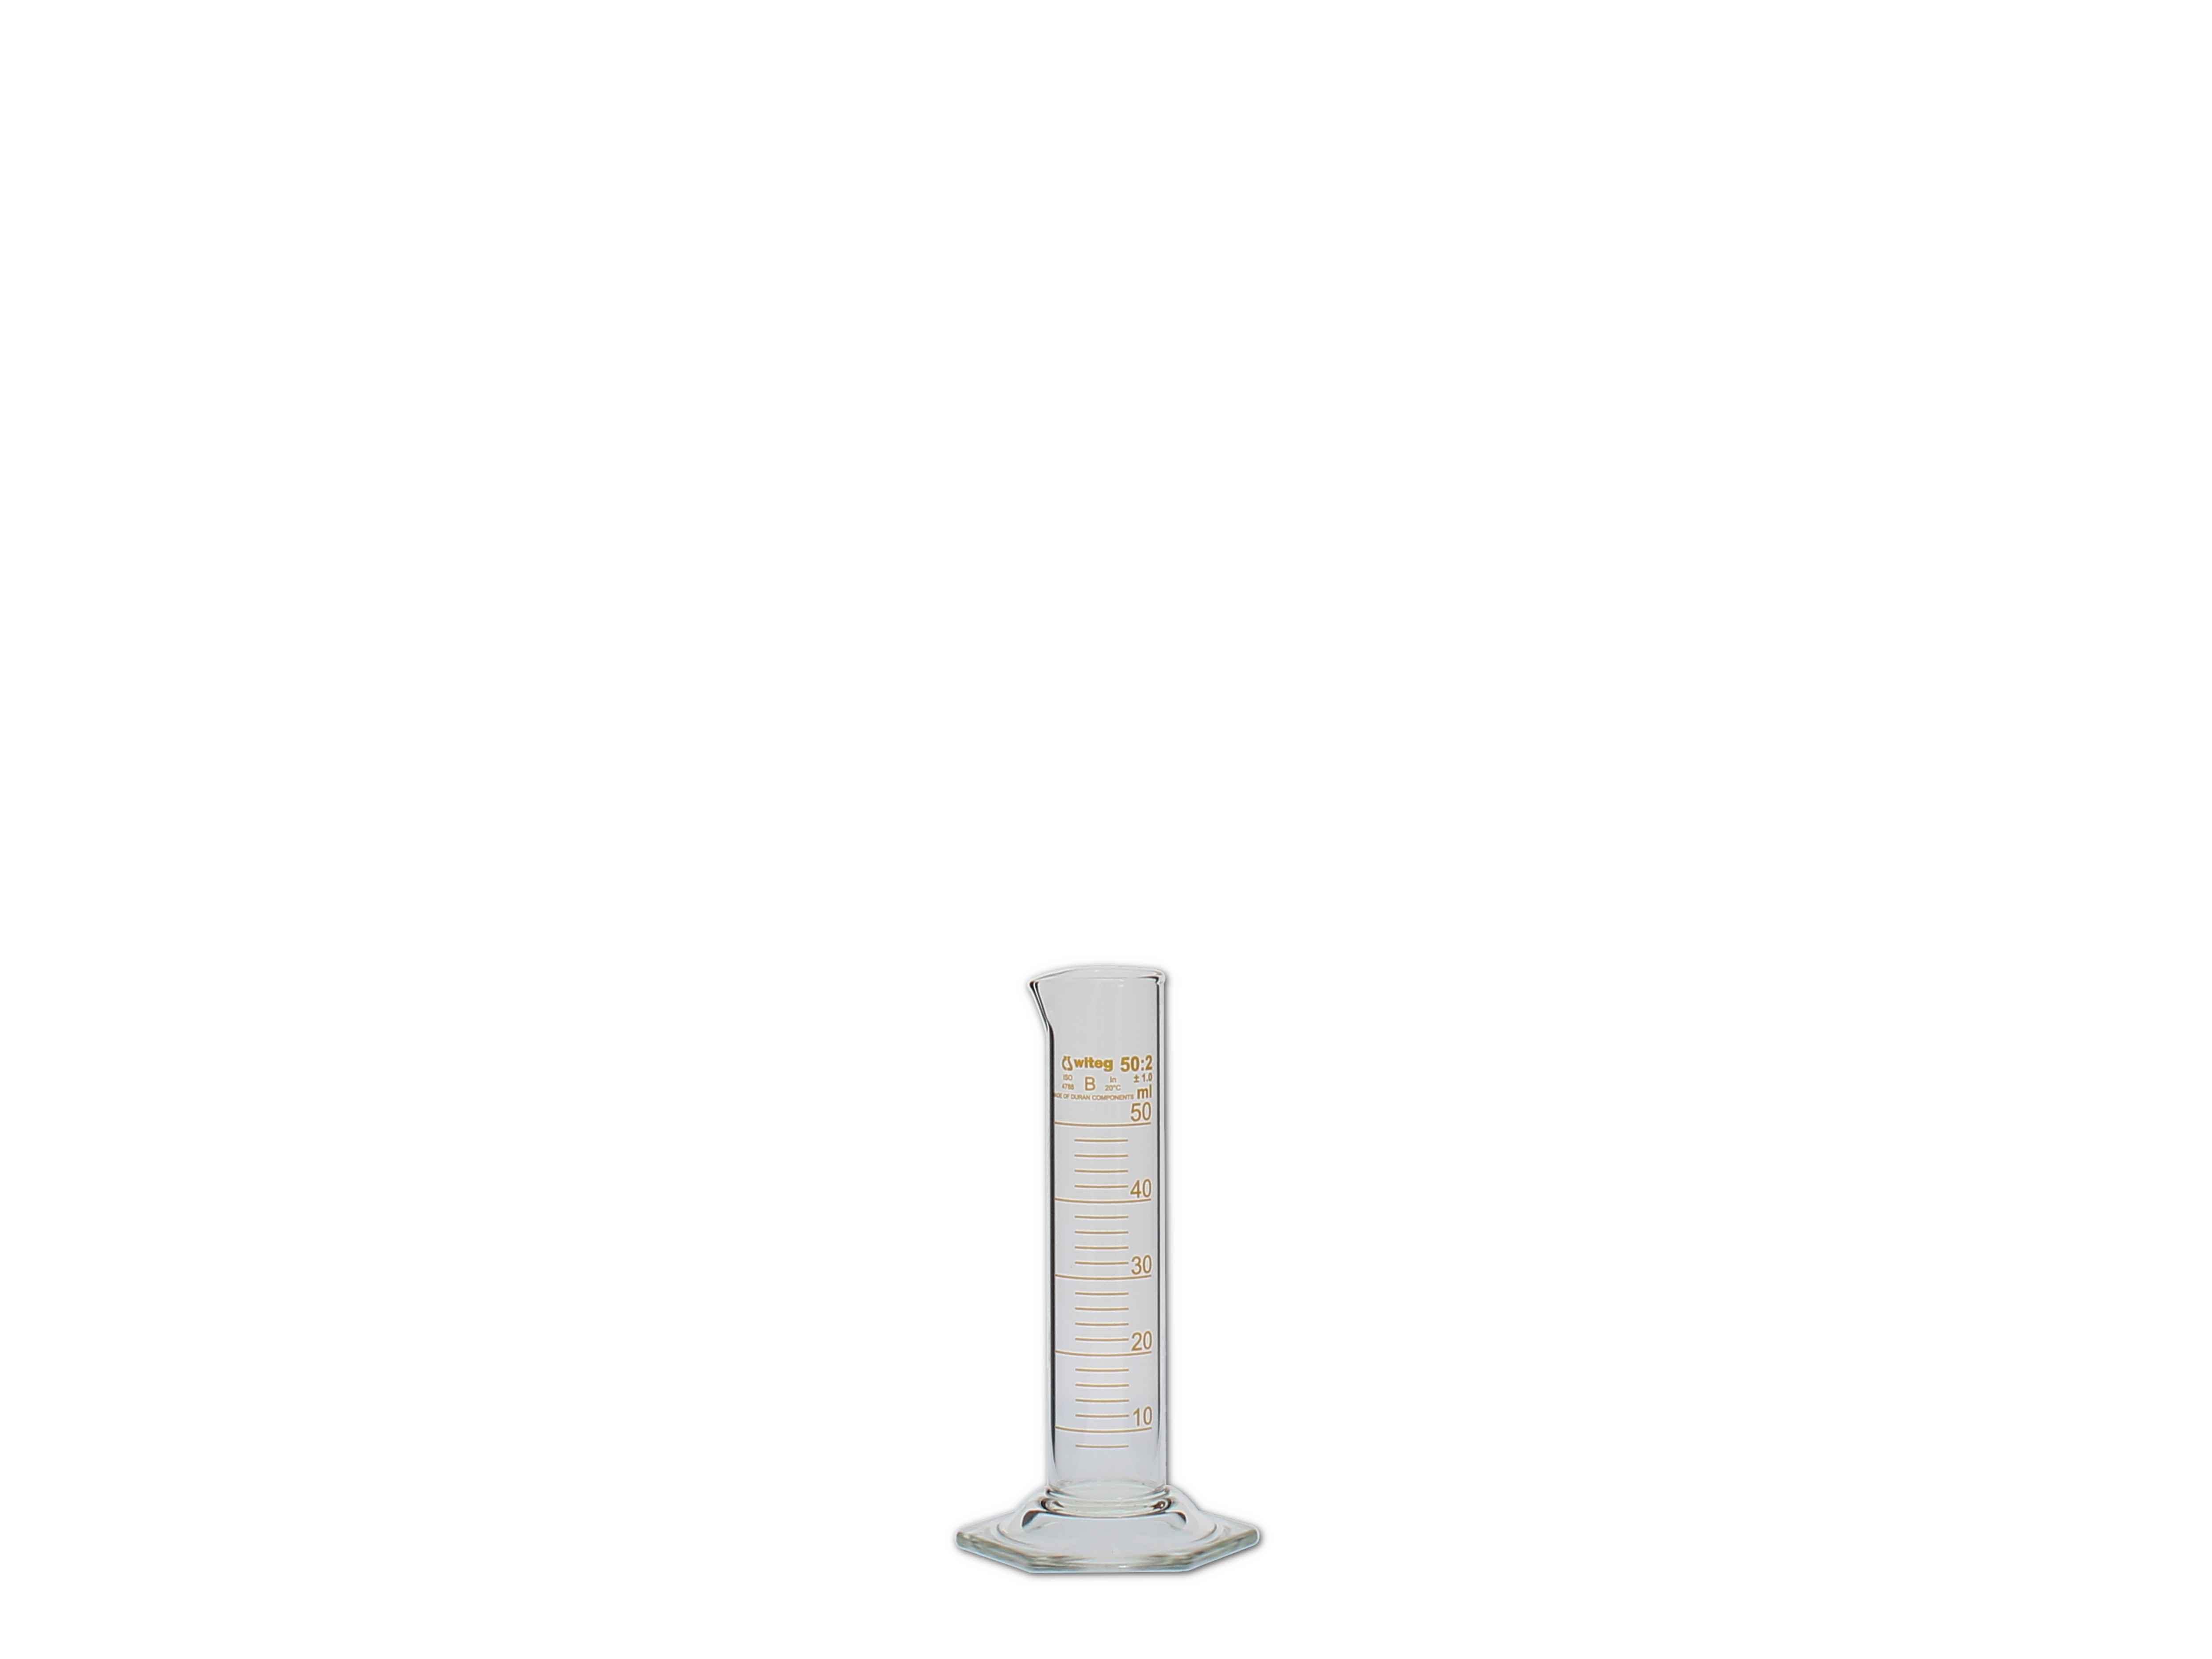    Messzylinder, Glas, graduiert - 50ml (niedere Form)